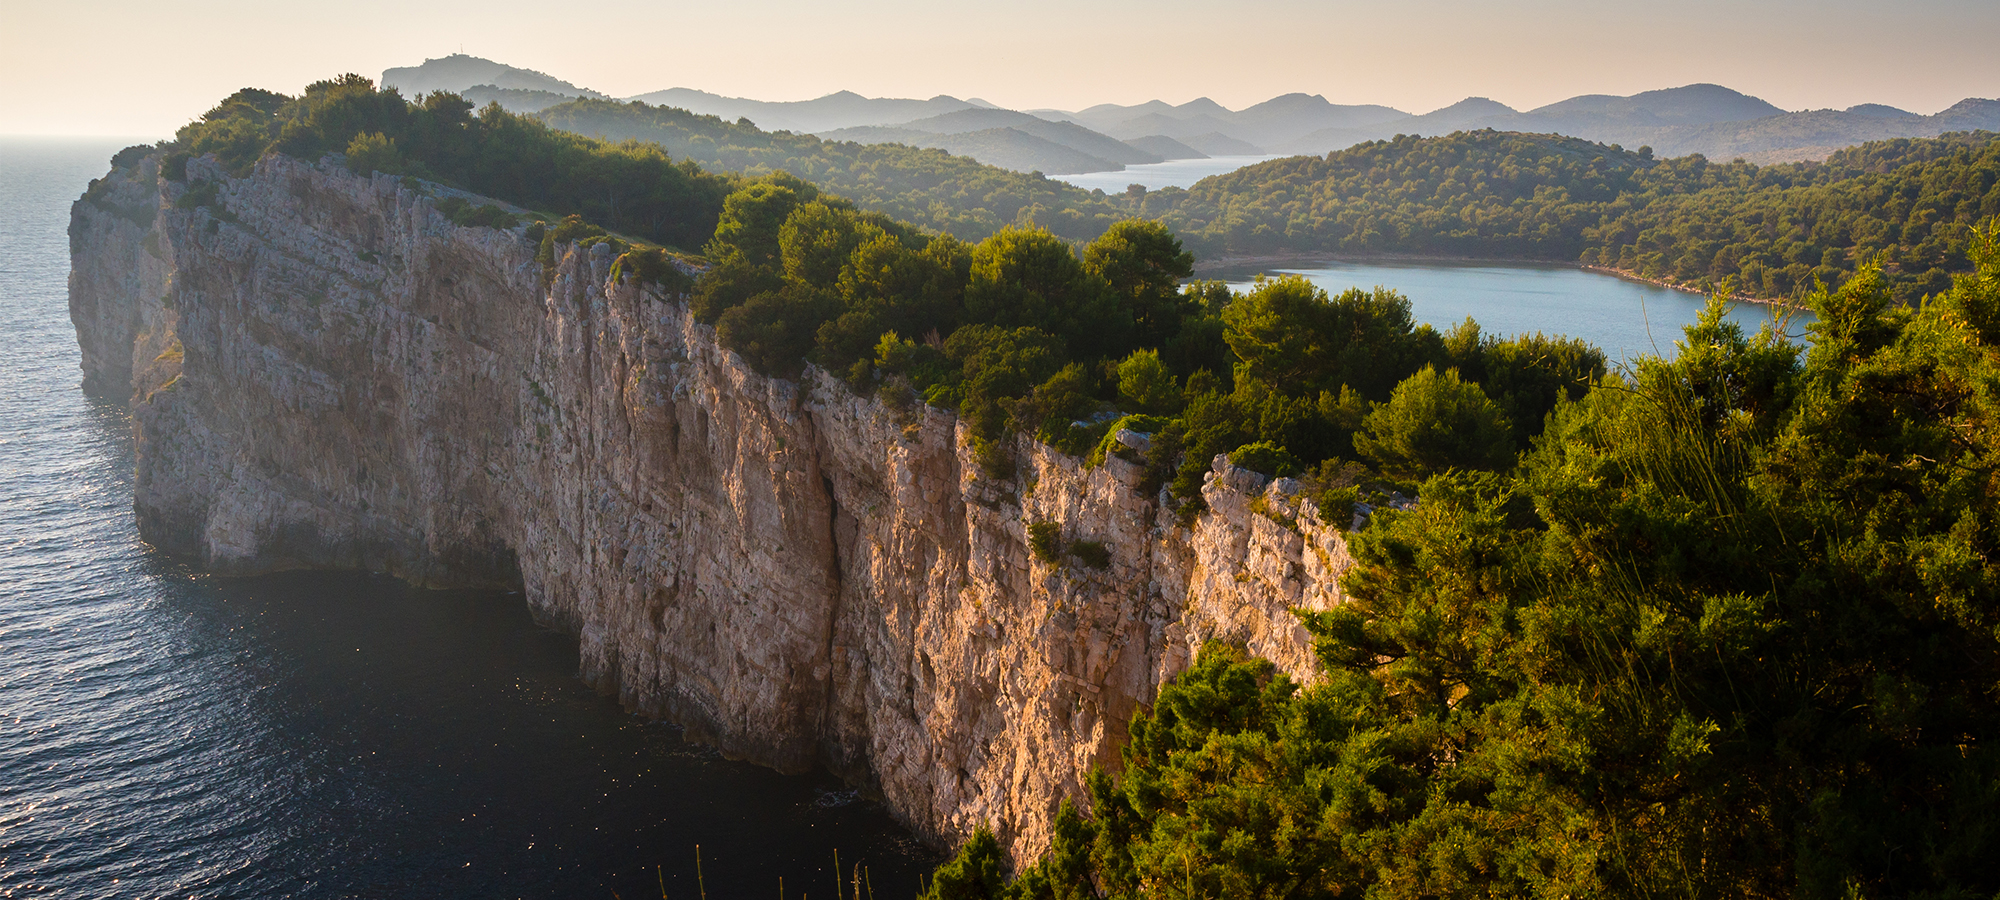 Holen Sie sich einen Adrenalinschub an diesen Top-Kletterplätzen in Dalmatien!